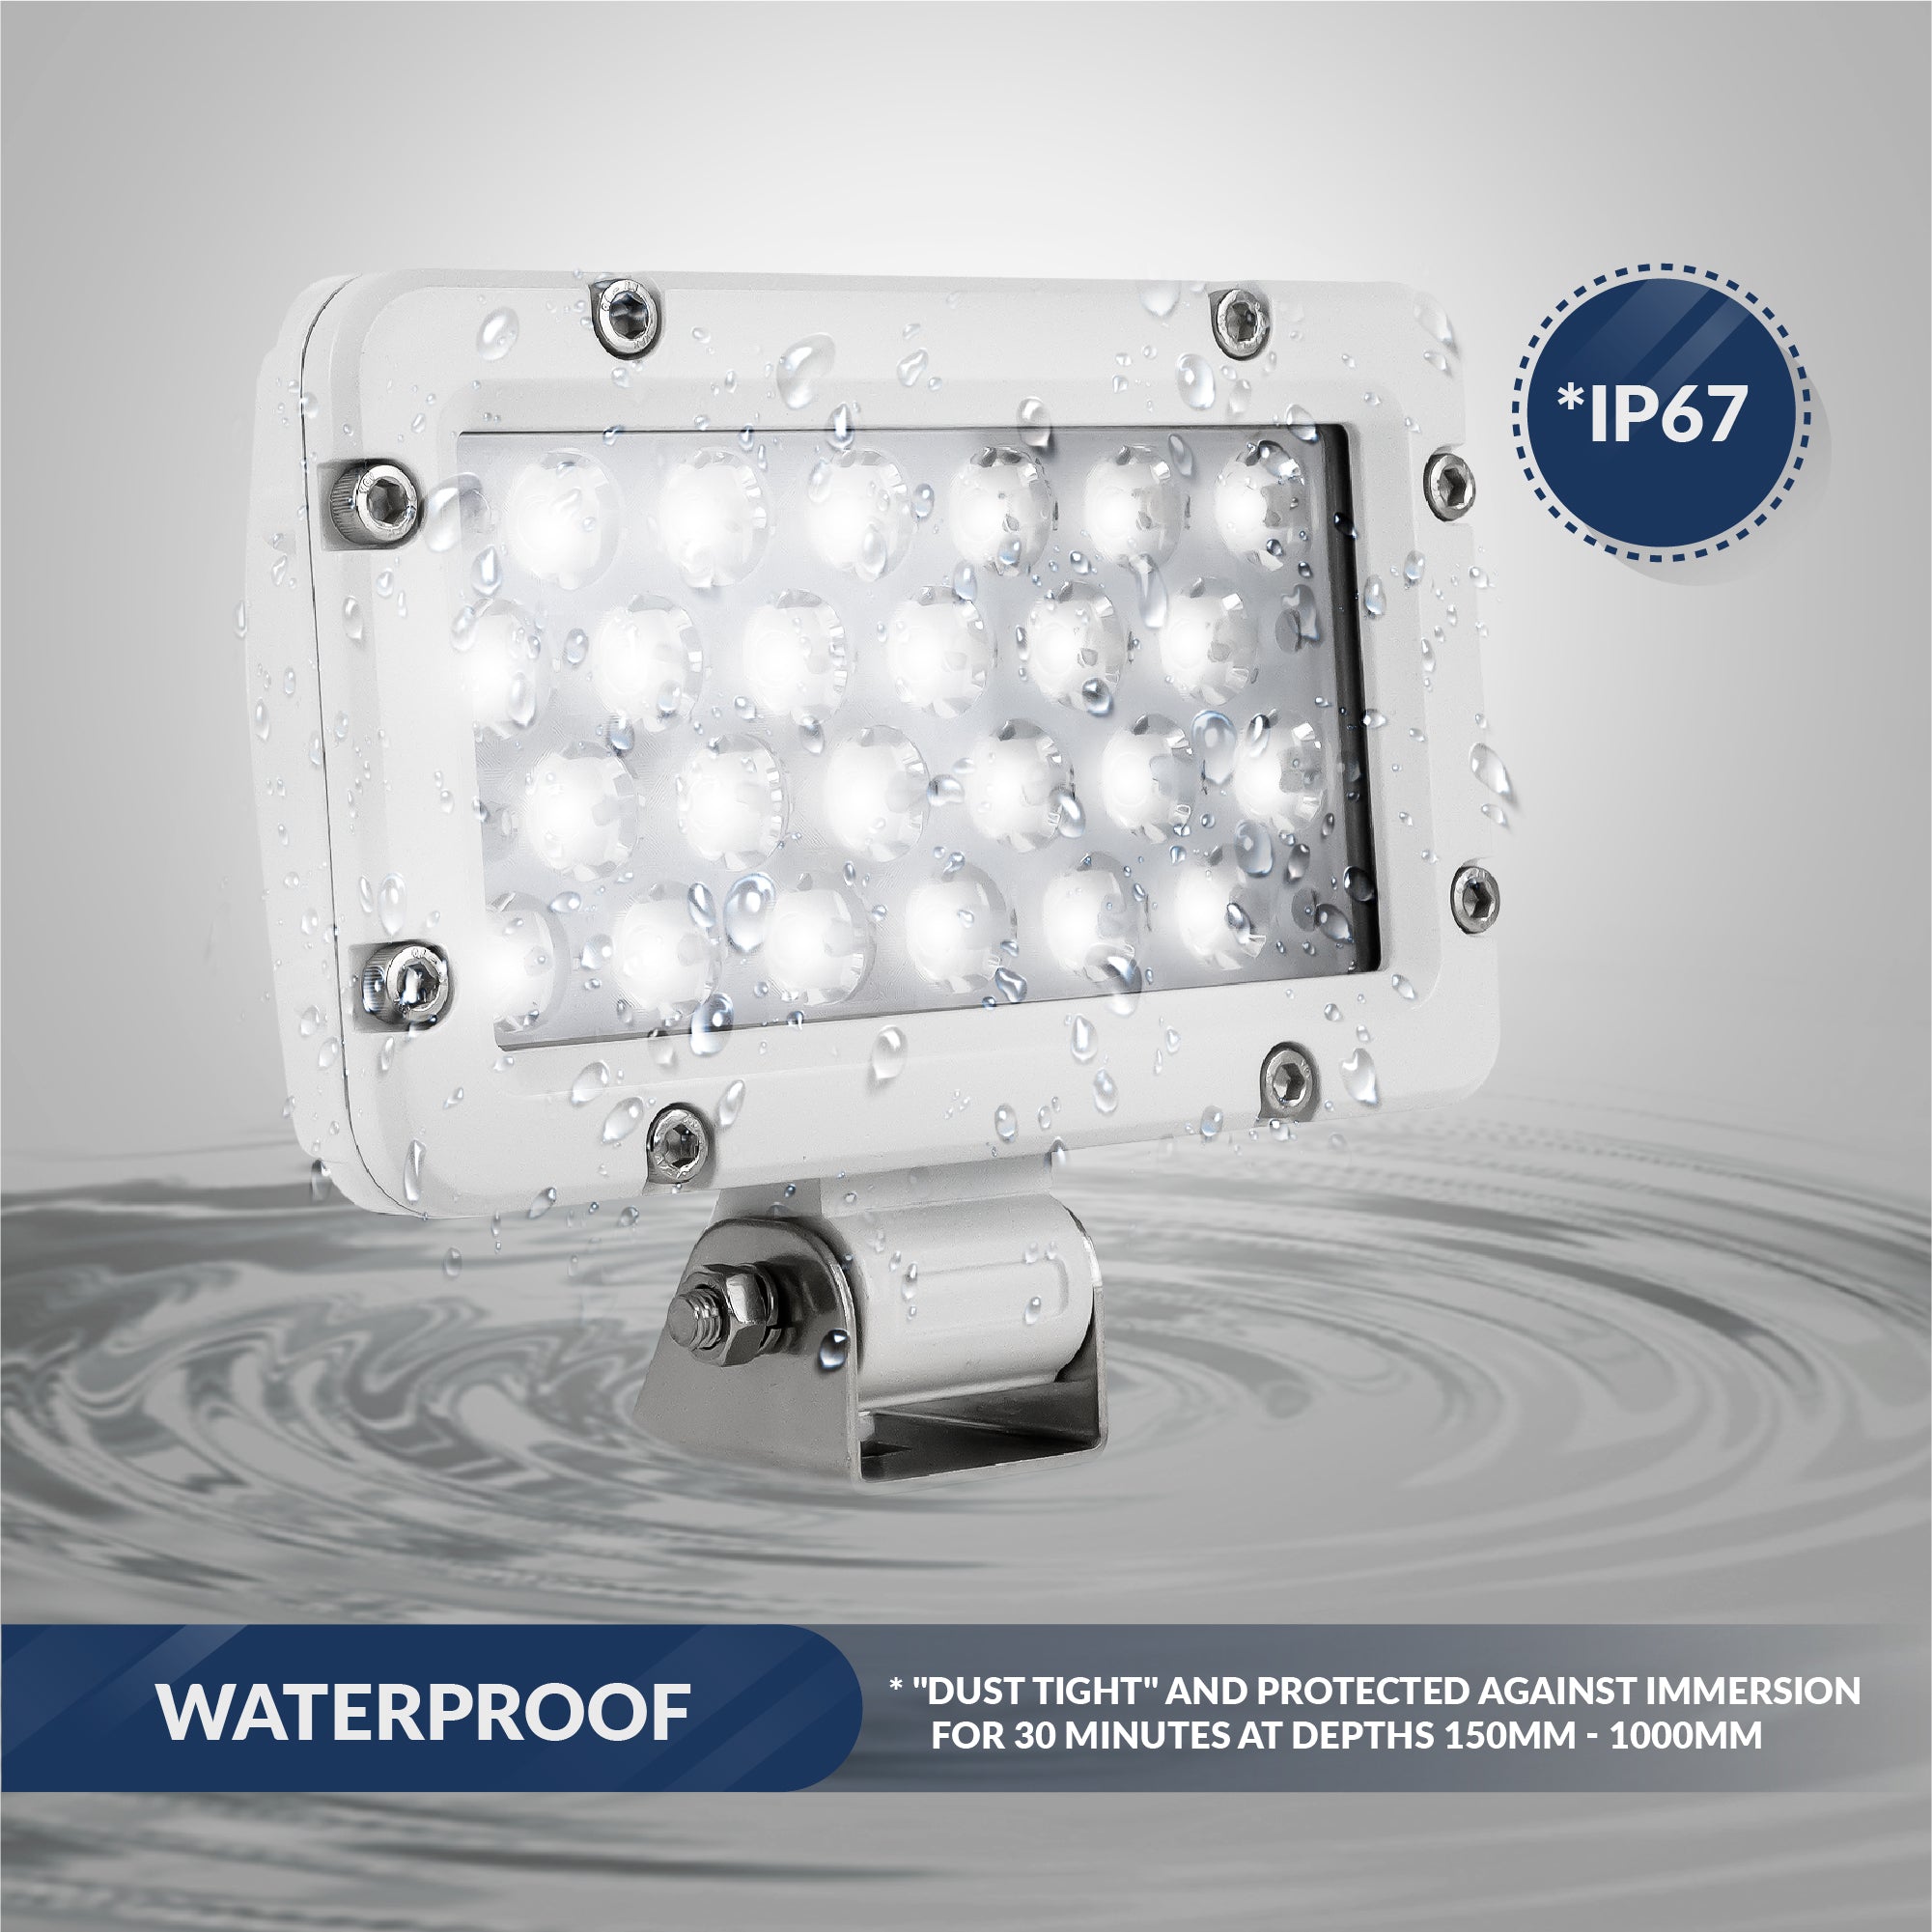 Spreader LED Flood Spotlight, 2400 Lumens, Cool White - FO3912